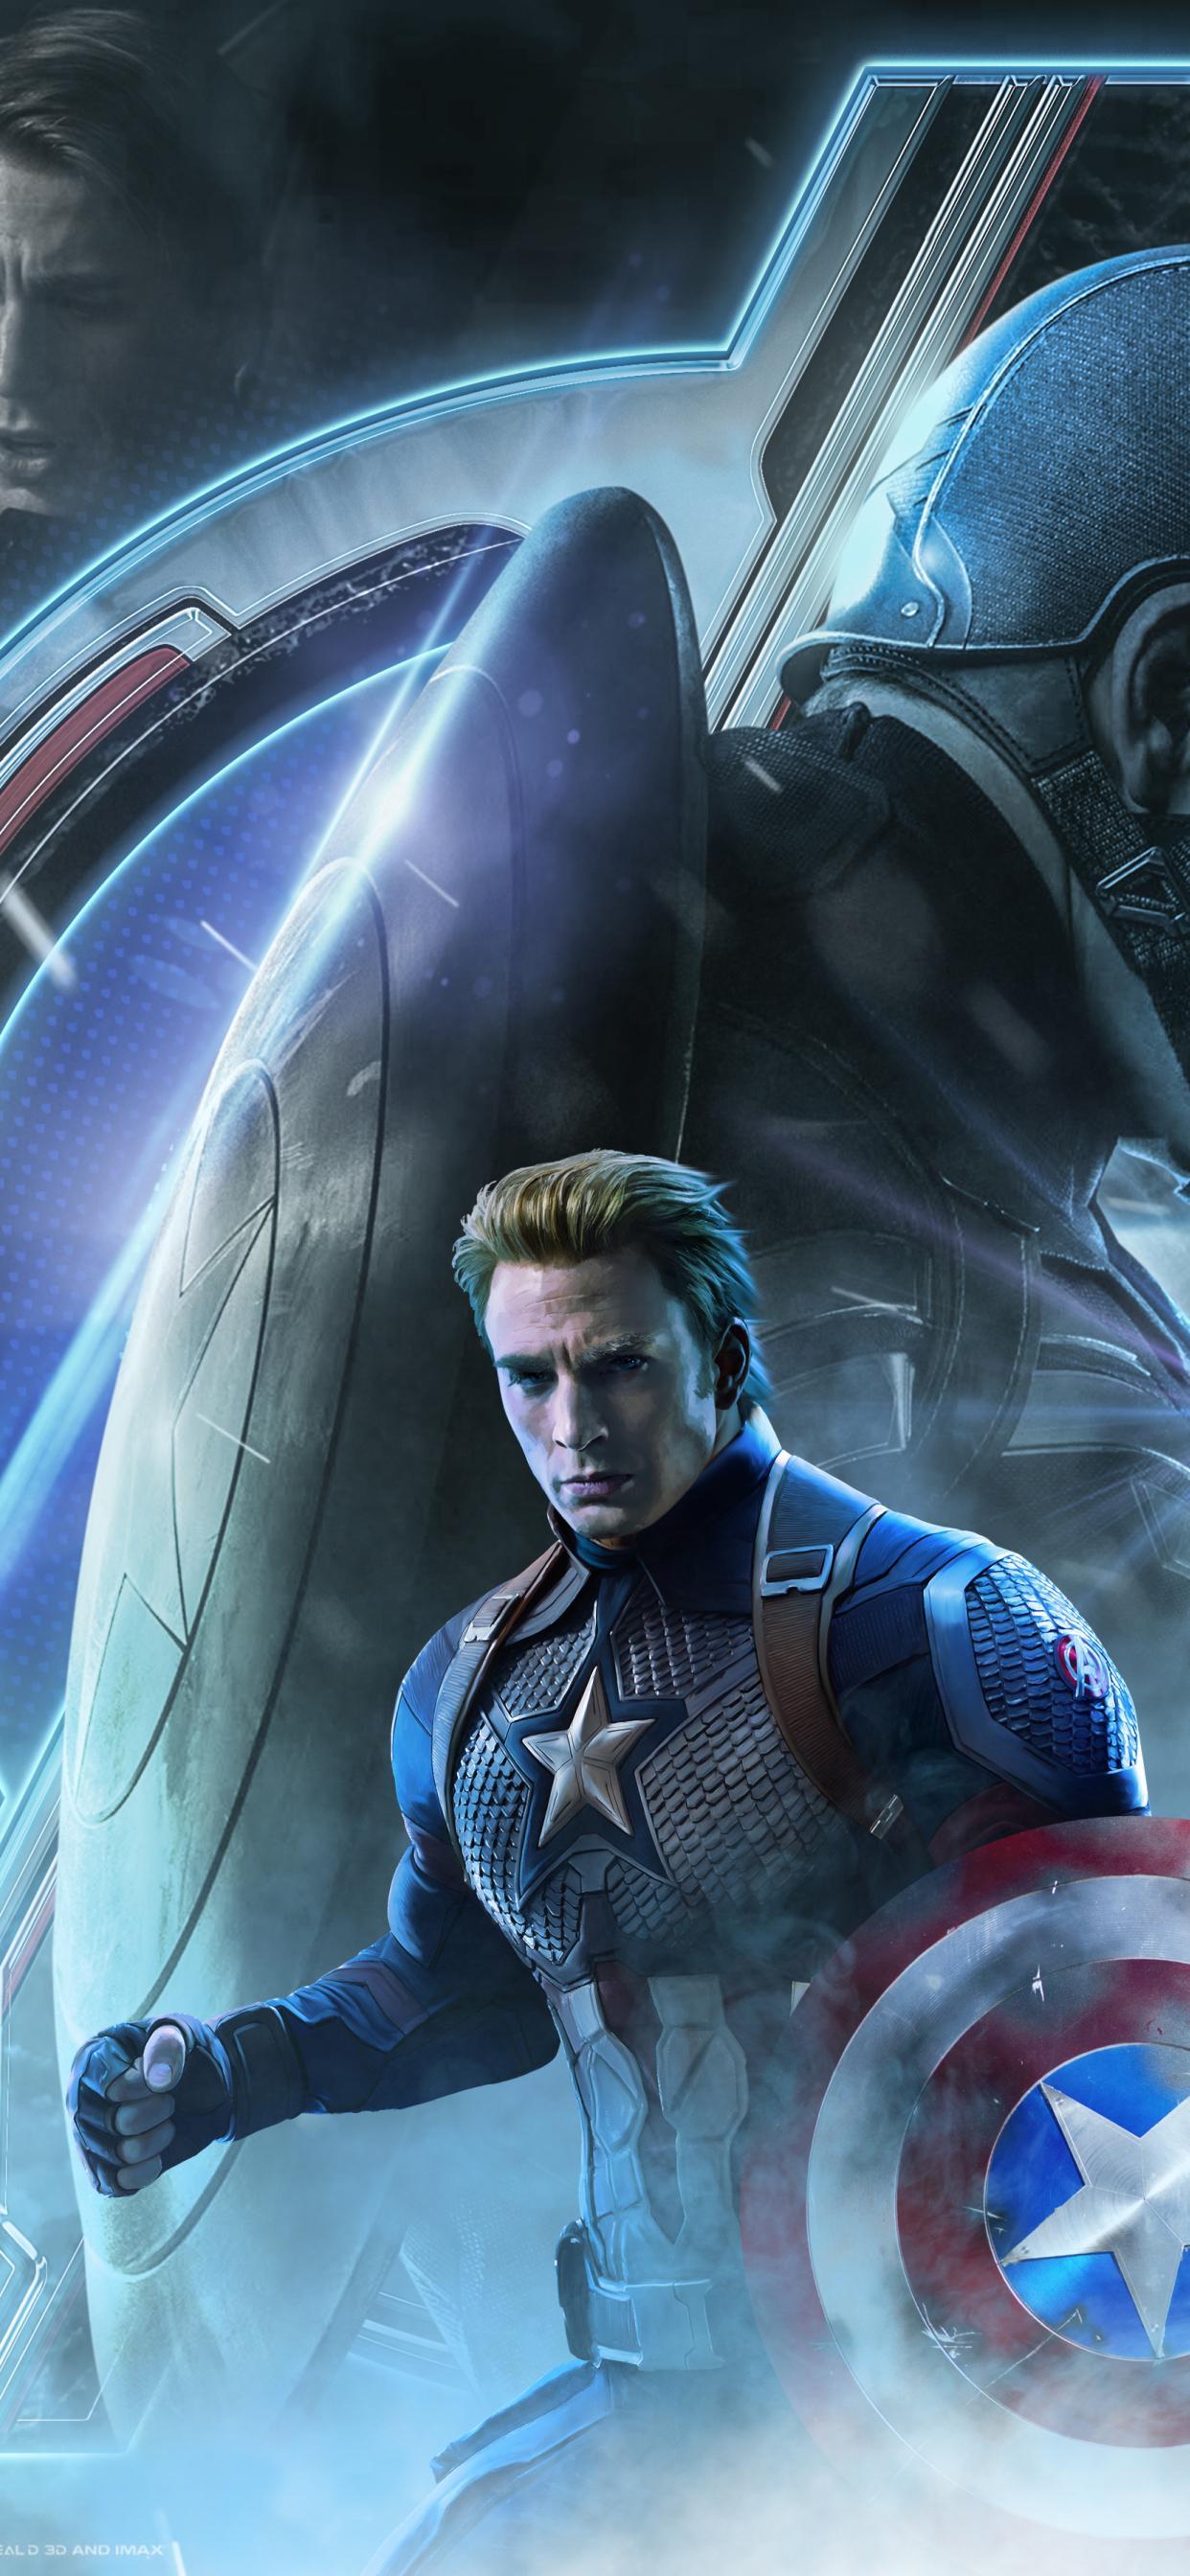 Captain America / Steve Rogers Avengers Endgame character